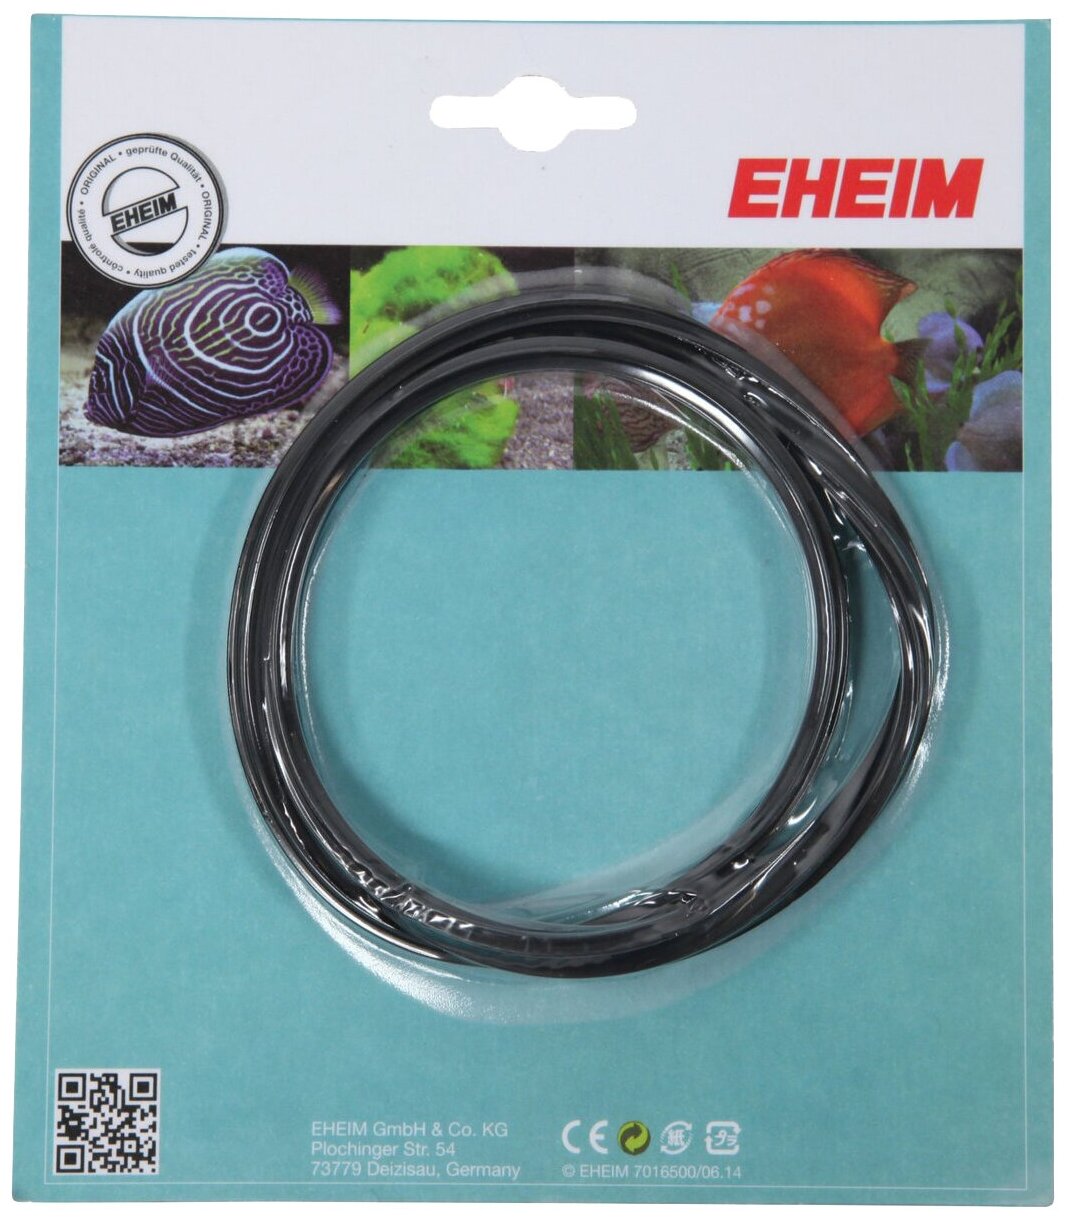 Уплотнитель для фильтра EHEIM EXPIRIENCE 150/250 резина 1шт/уп